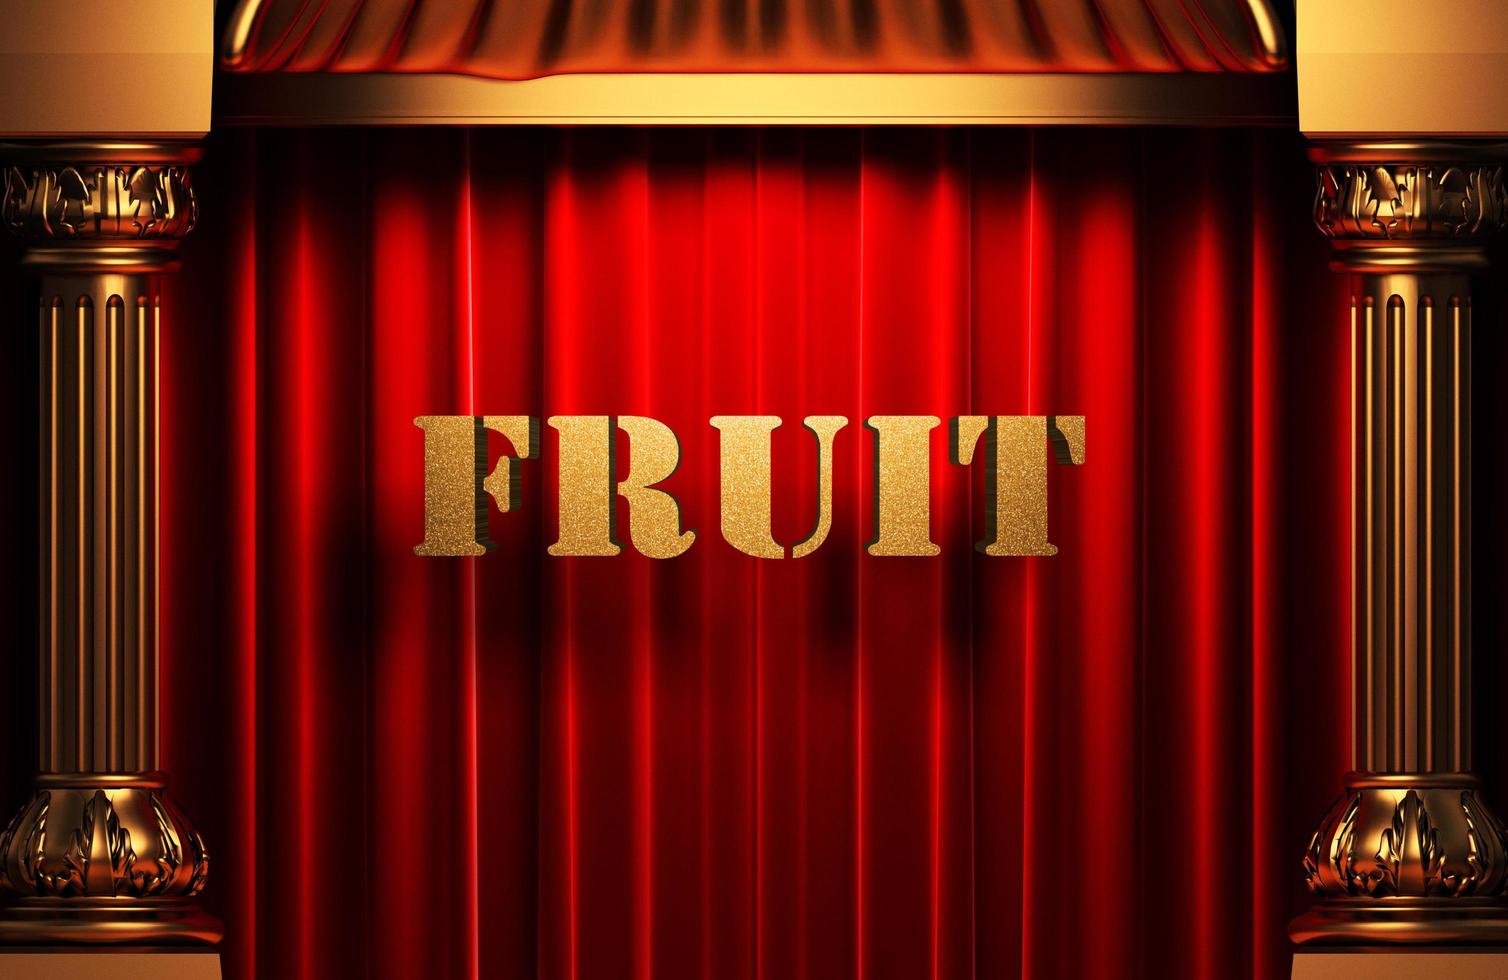 palavra de fruta dourada na cortina vermelha foto